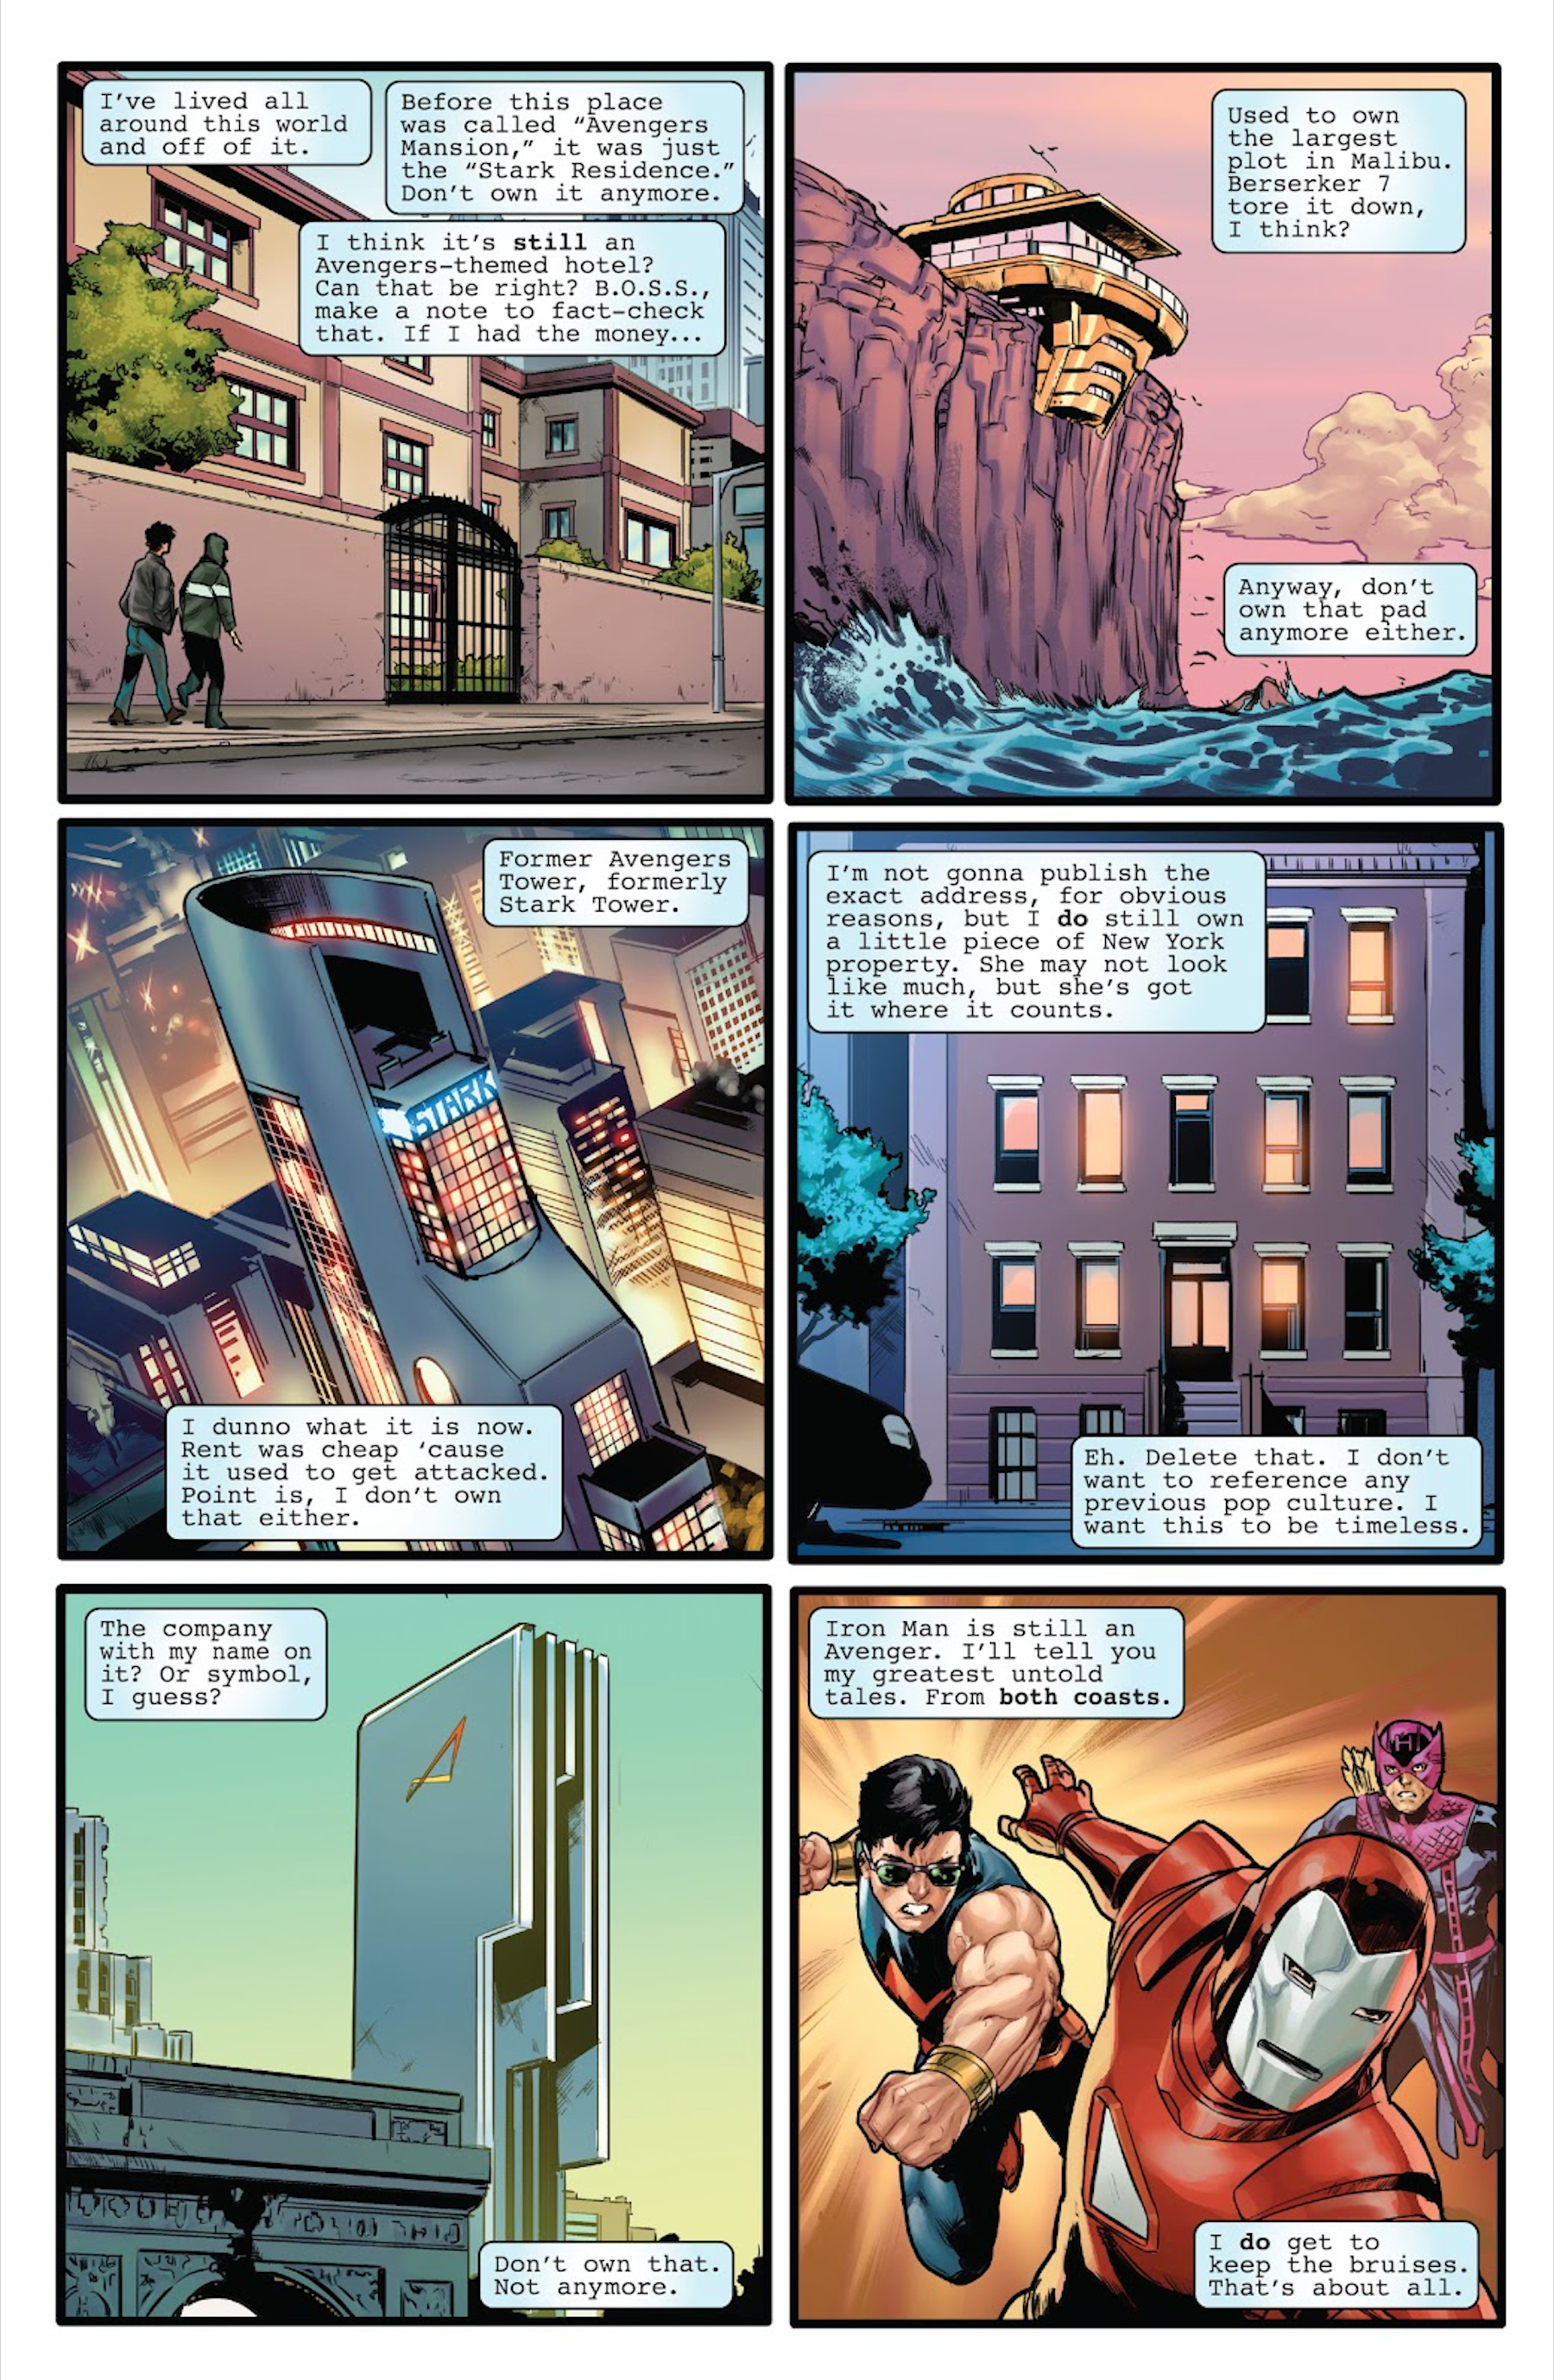 Iron Man explica sus casas en los cómics de Marvel